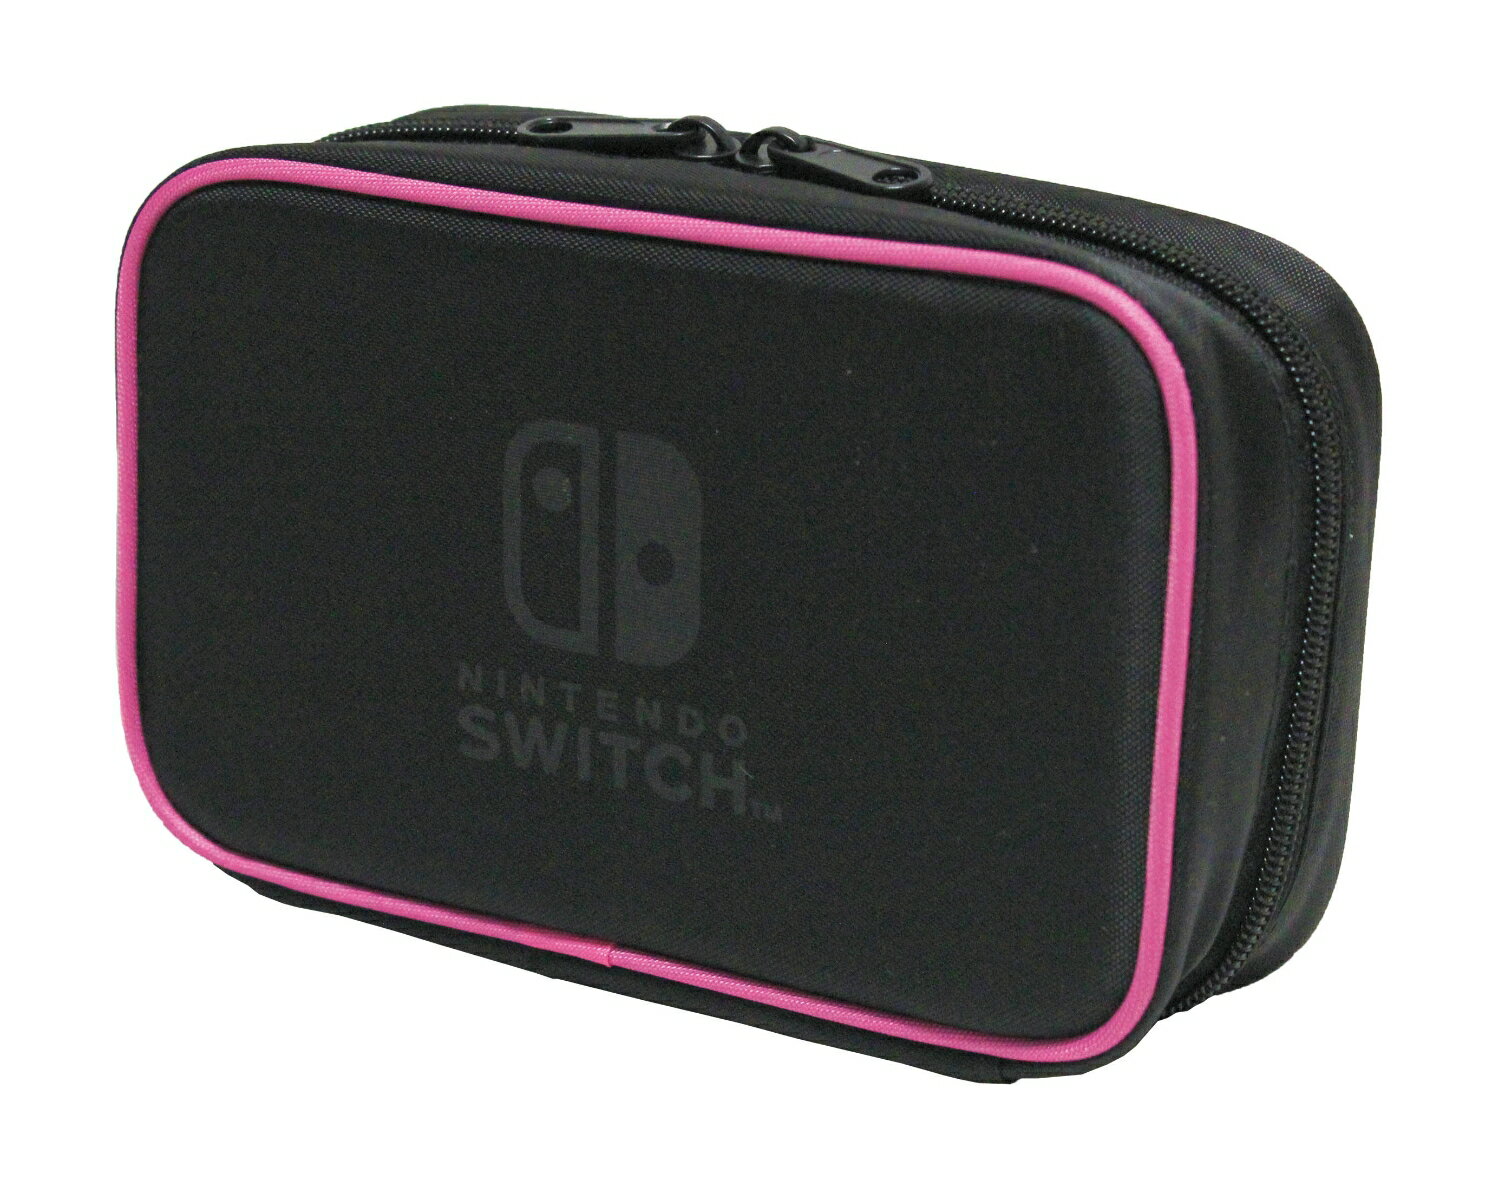 Nintendo Switch専用スマートポーチコンパクト ピンクの画像